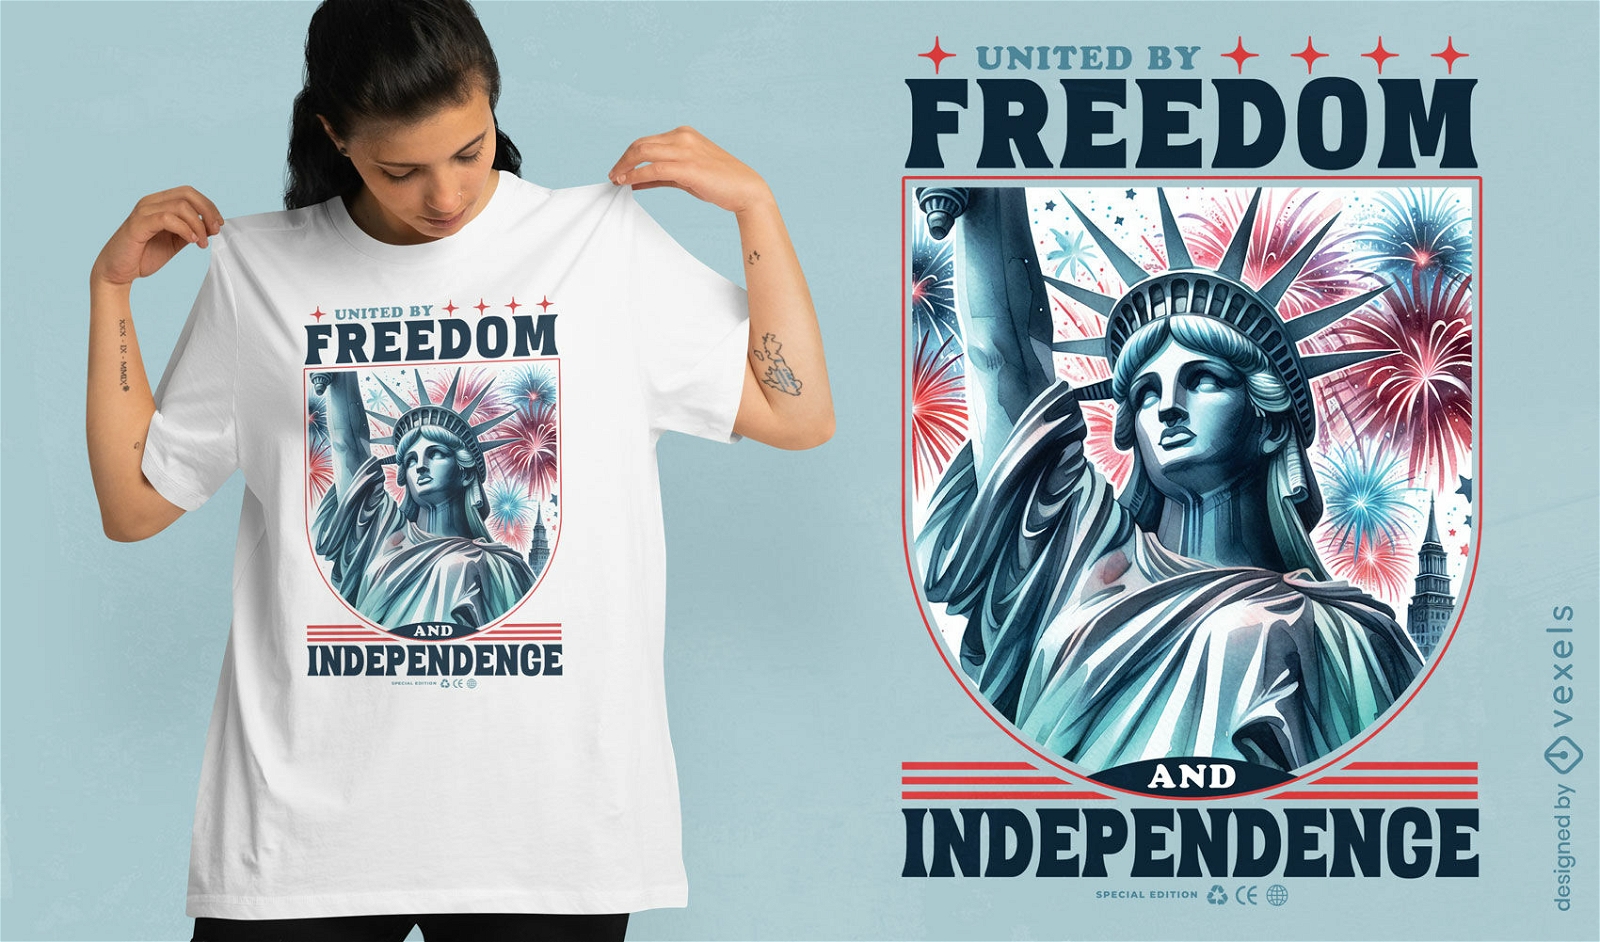 Dise?o de camiseta Unidos por la libertad y la independencia.